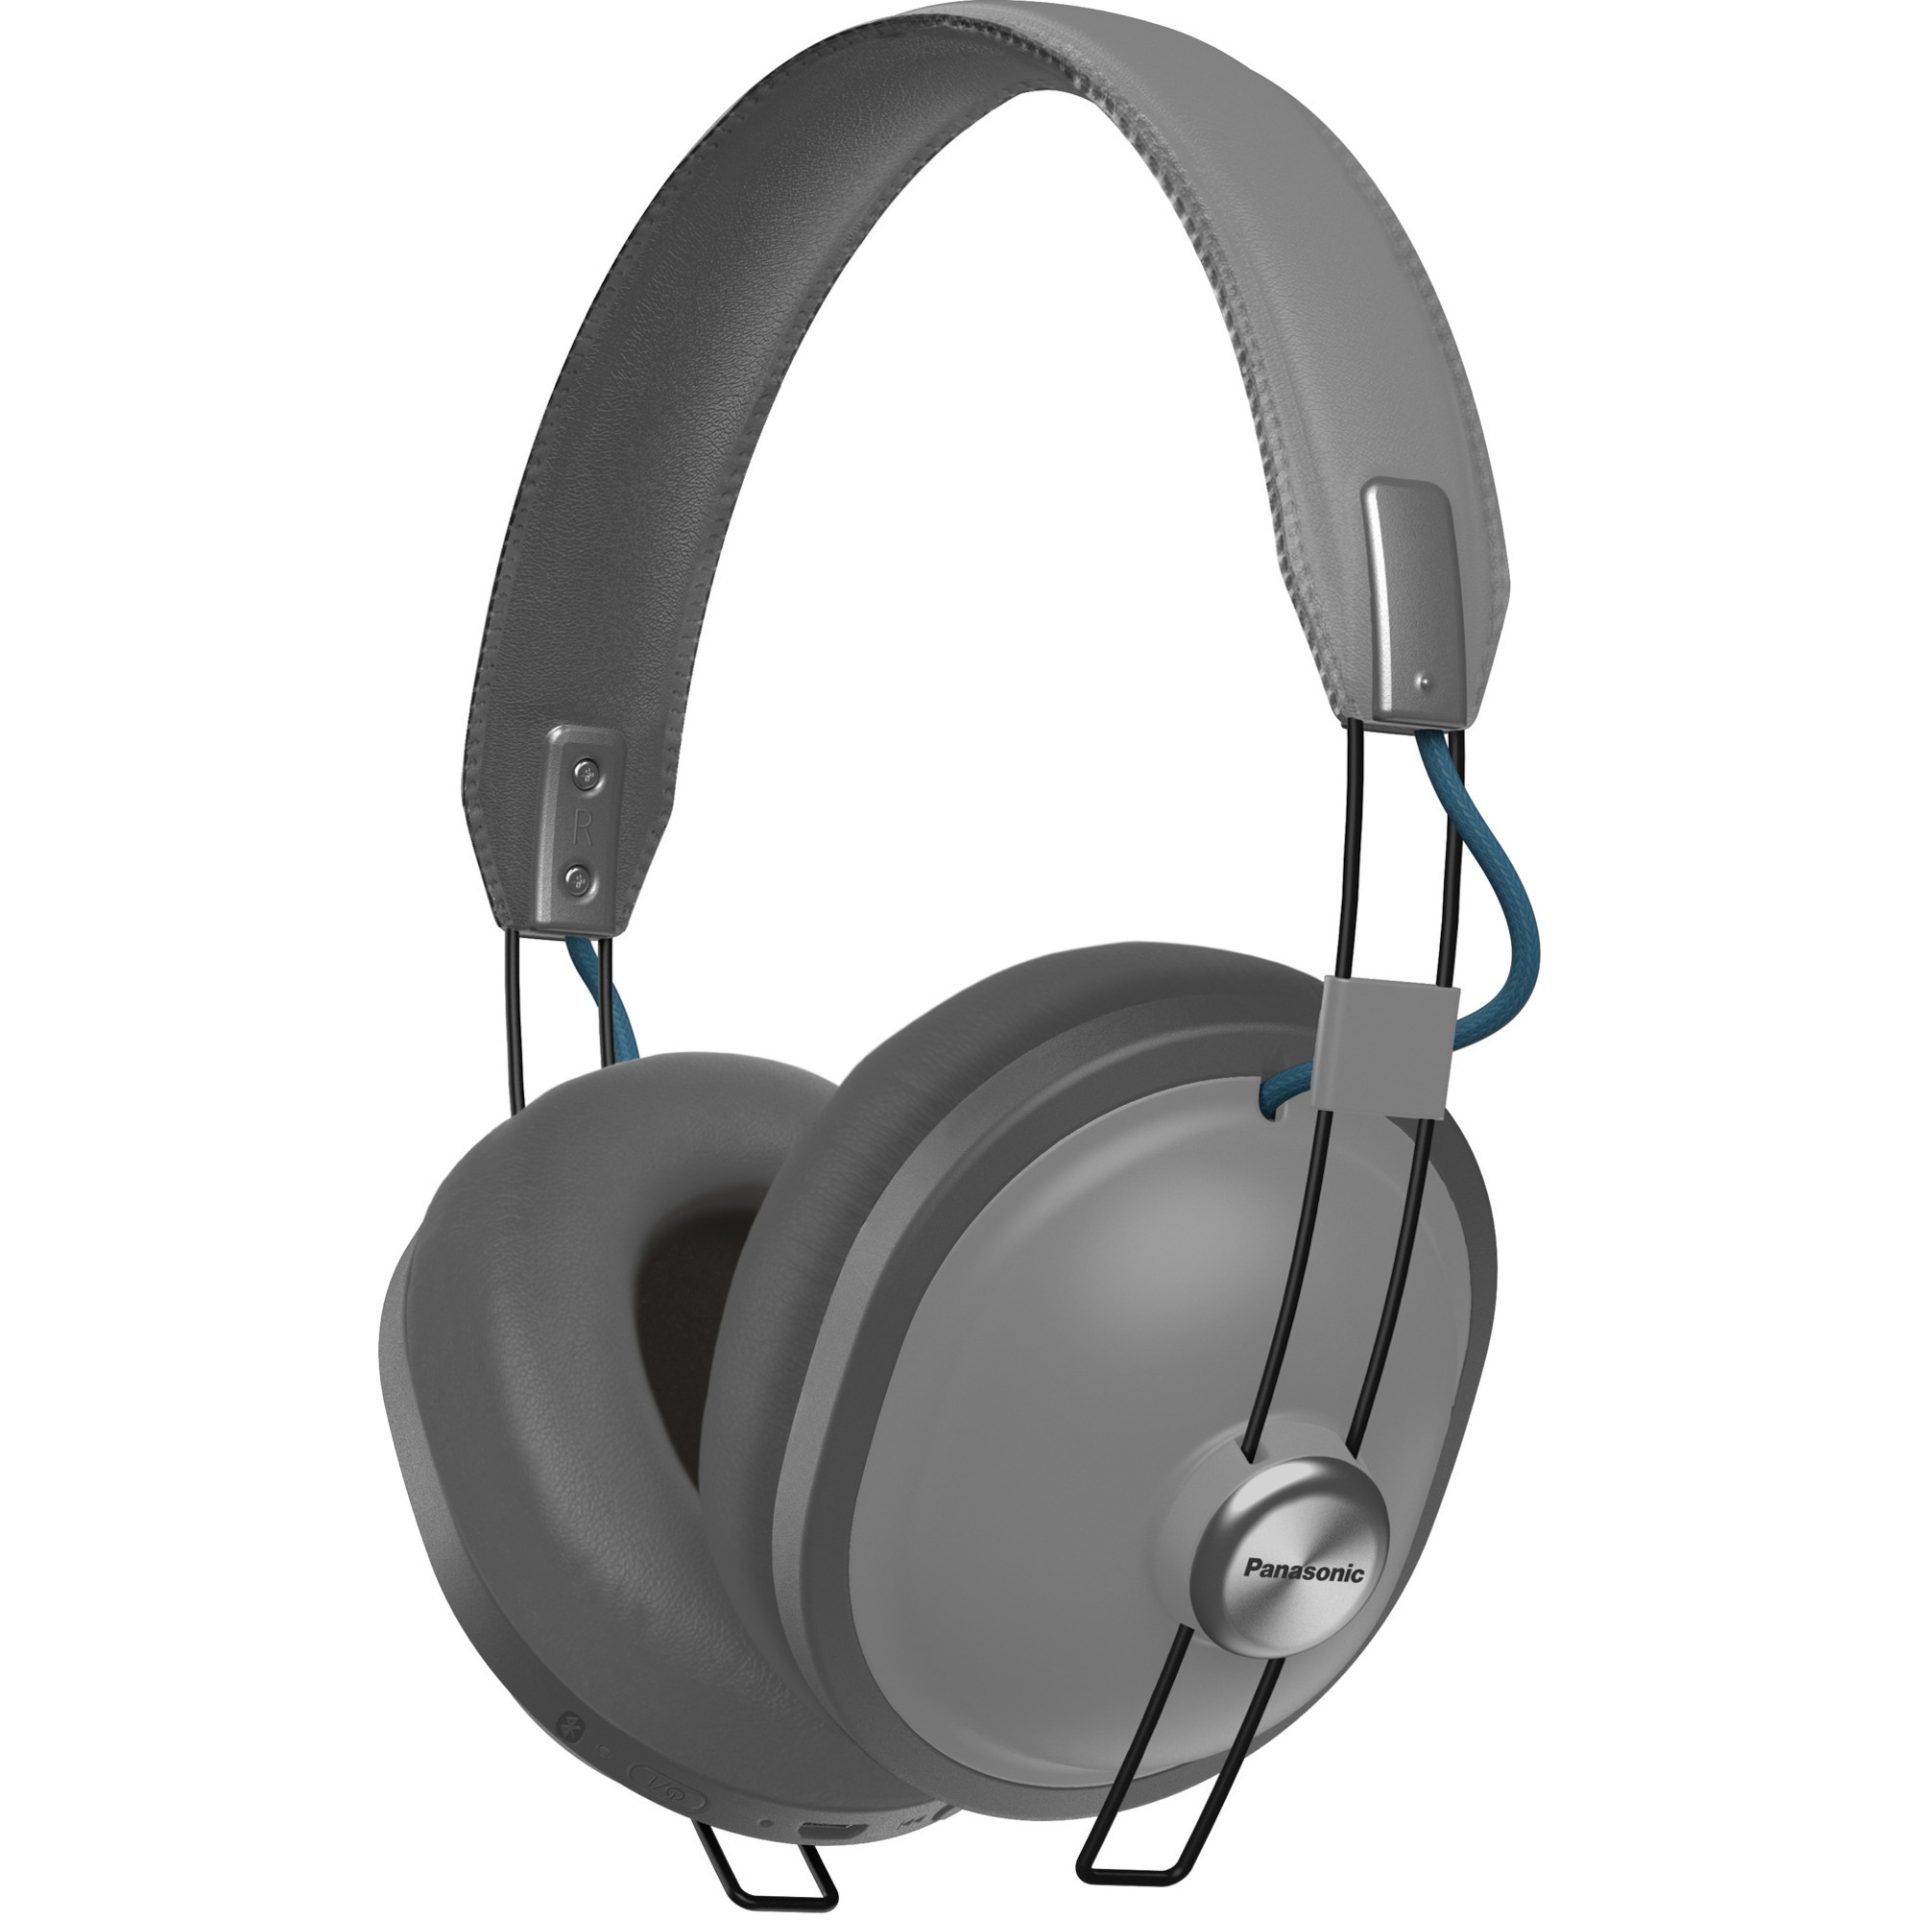 Panasonic RP-HTX80 bezdrátová Bluetooth sluchátka přes uši v retro stylu (40mm měniče, acoustic bass control filtr, 24h přehrávání), šedá